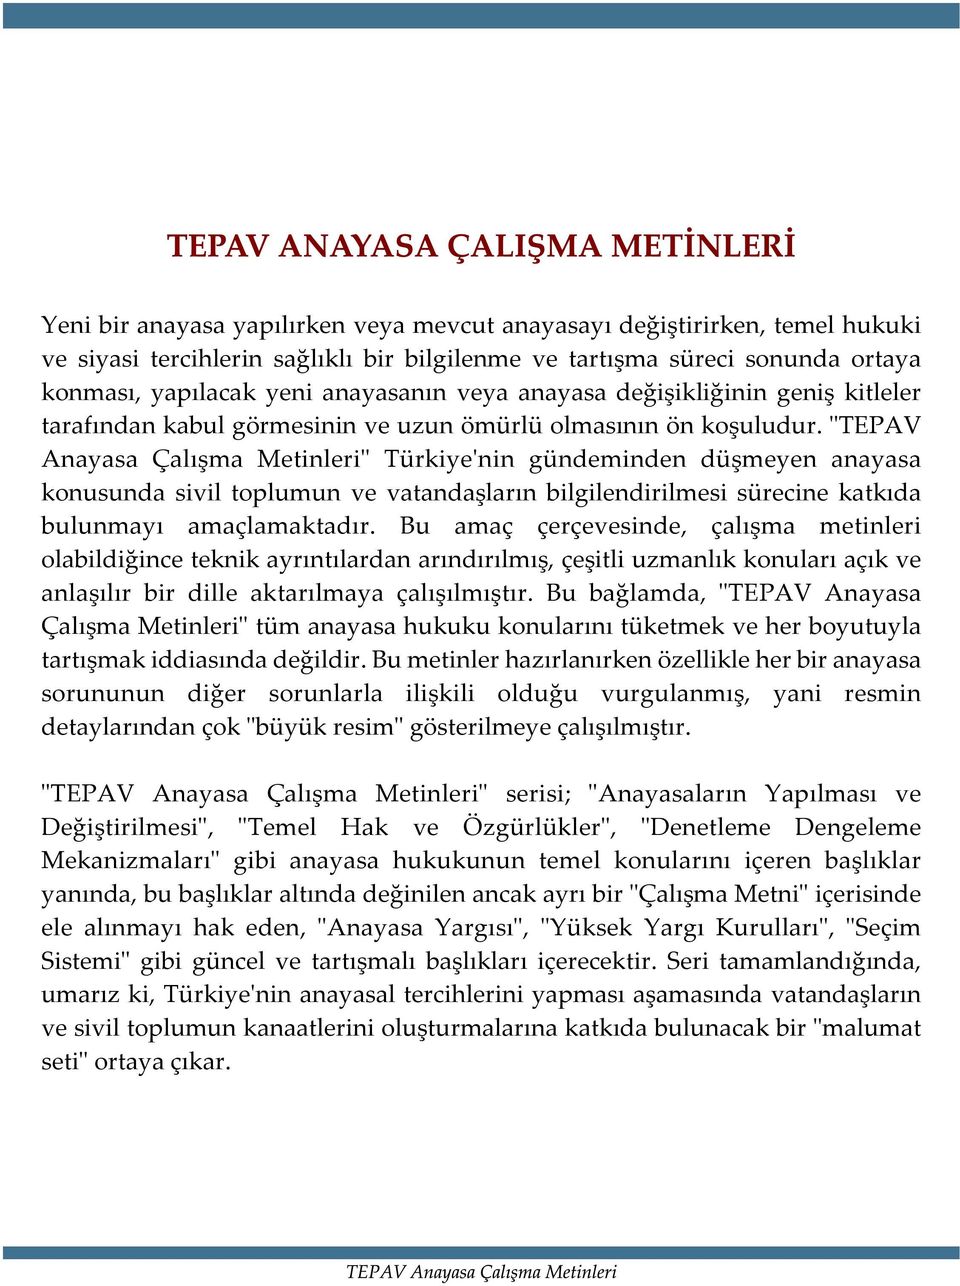 "TEPAV Anayasa Çalýþma Metinleri" Türkiye'nin gündeminden düþmeyen anayasa konusunda sivil toplumun ve vatandaþlarýn bilgilendirilmesi sürecine katkýda bulunmayý amaçlamaktadýr.